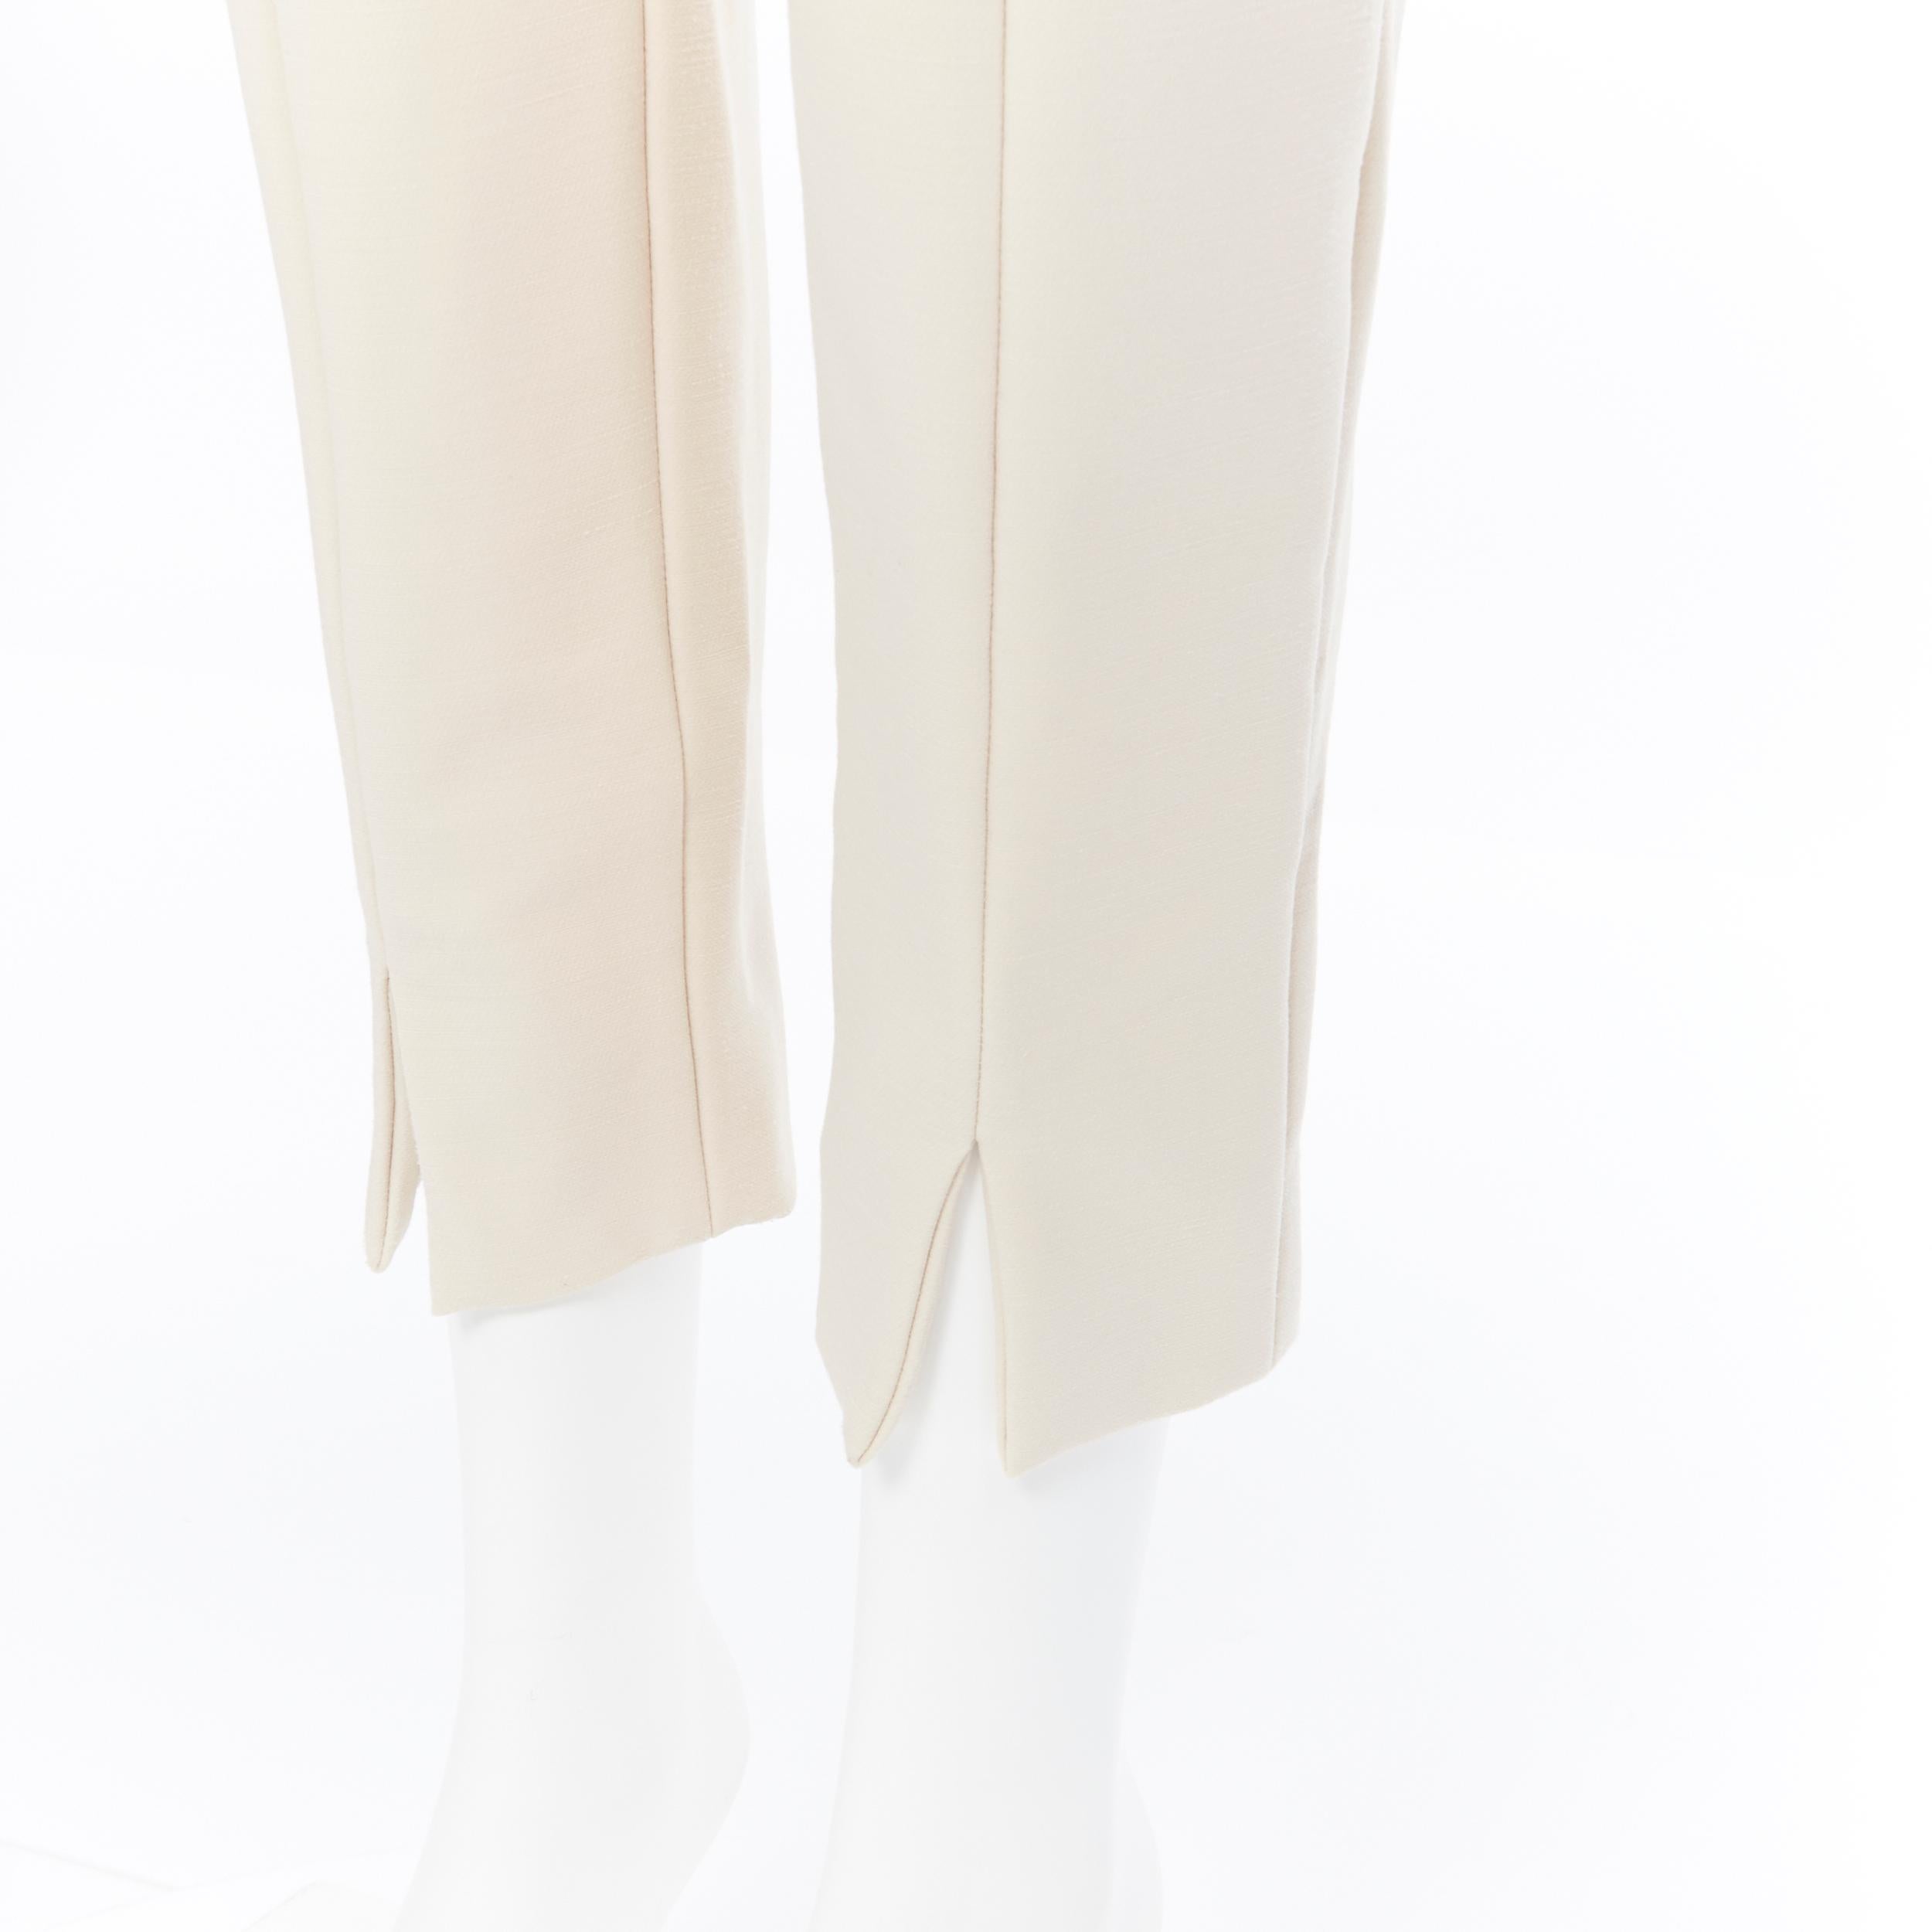 CHLOE beige nude virgin wool blend slim fit slit hem trousers pants FR40
Brand: Chloe
Model Name / Style: Cropped pants
Material: Wool blend
Color: Beige
Pattern: Solid
Closure: Zip
Extra Detail: Concealed zipper closure slit pocket. Slit detail at